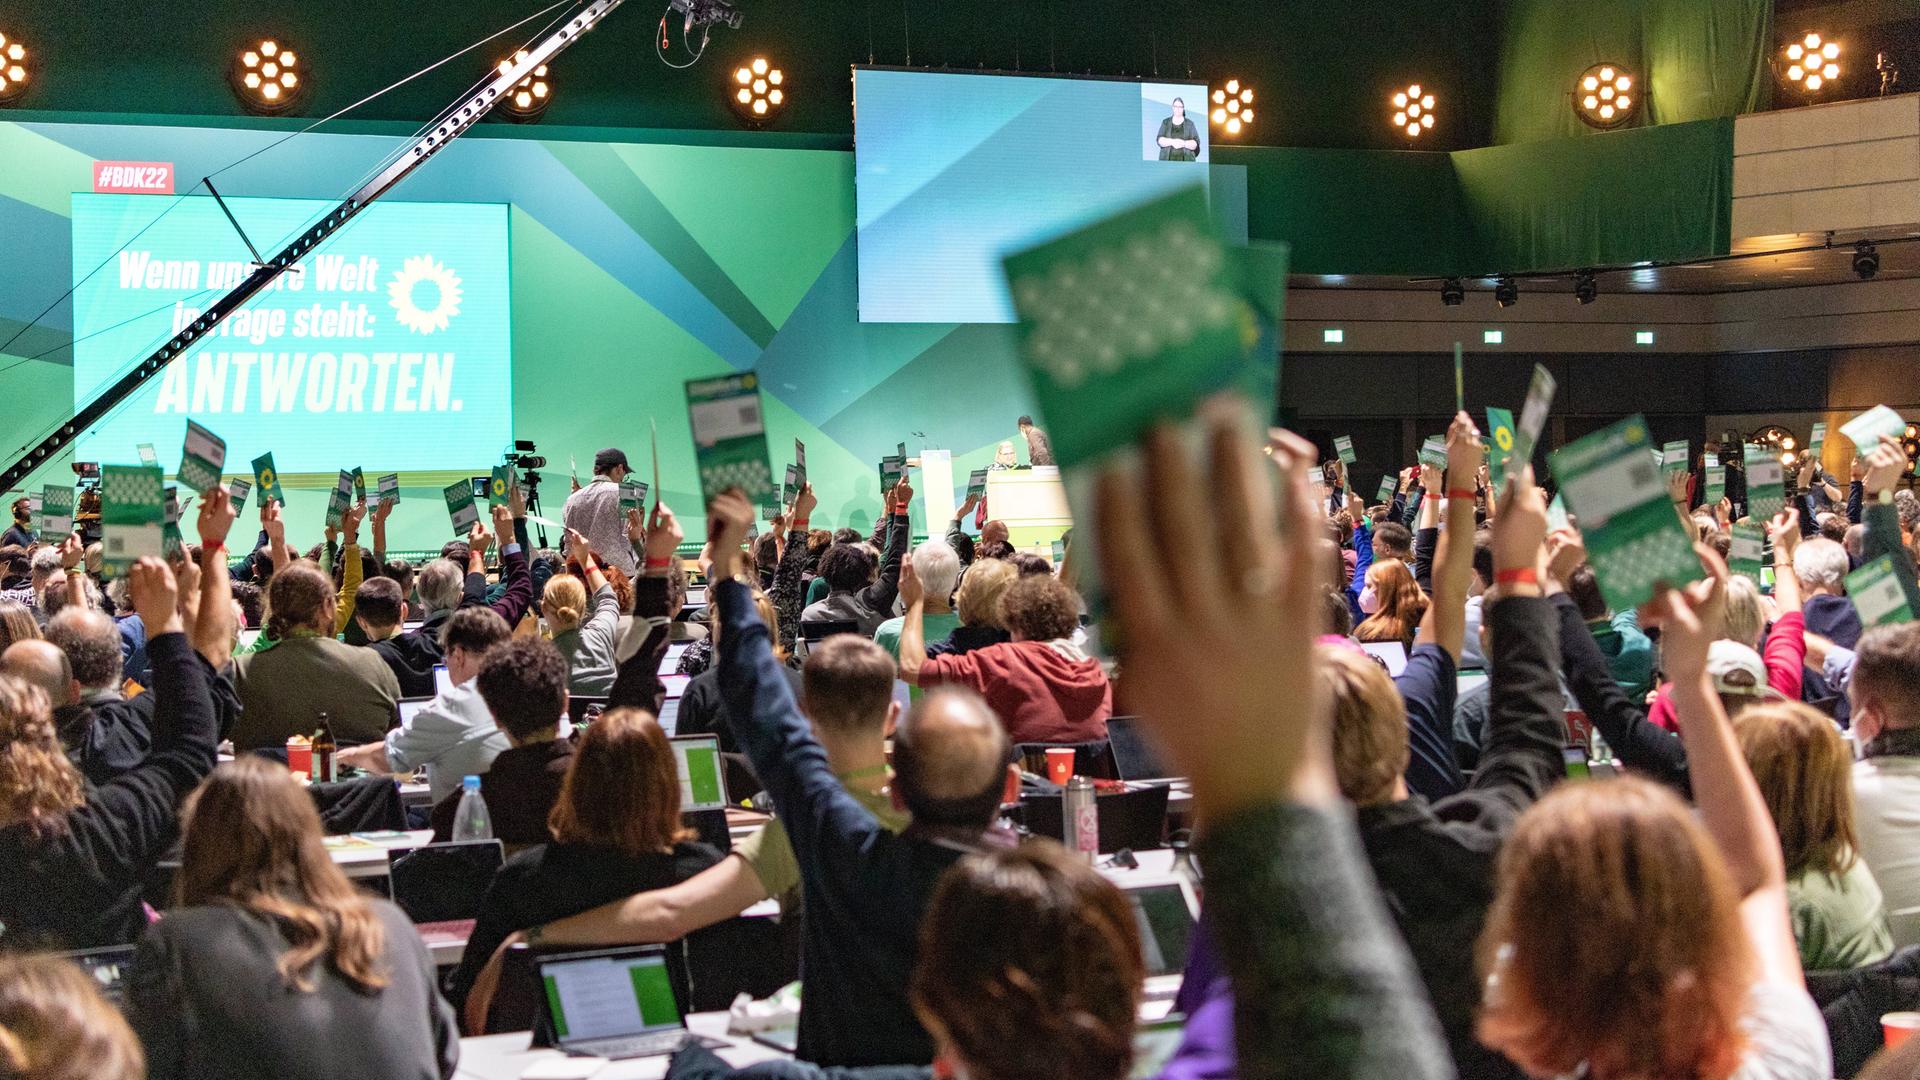 Der Parteitag von Bündnis 90/Die Grünen am 15. Oktober im WCCB in Bonn - Delegierte stimmen mit ihrer Wahlkarte ab